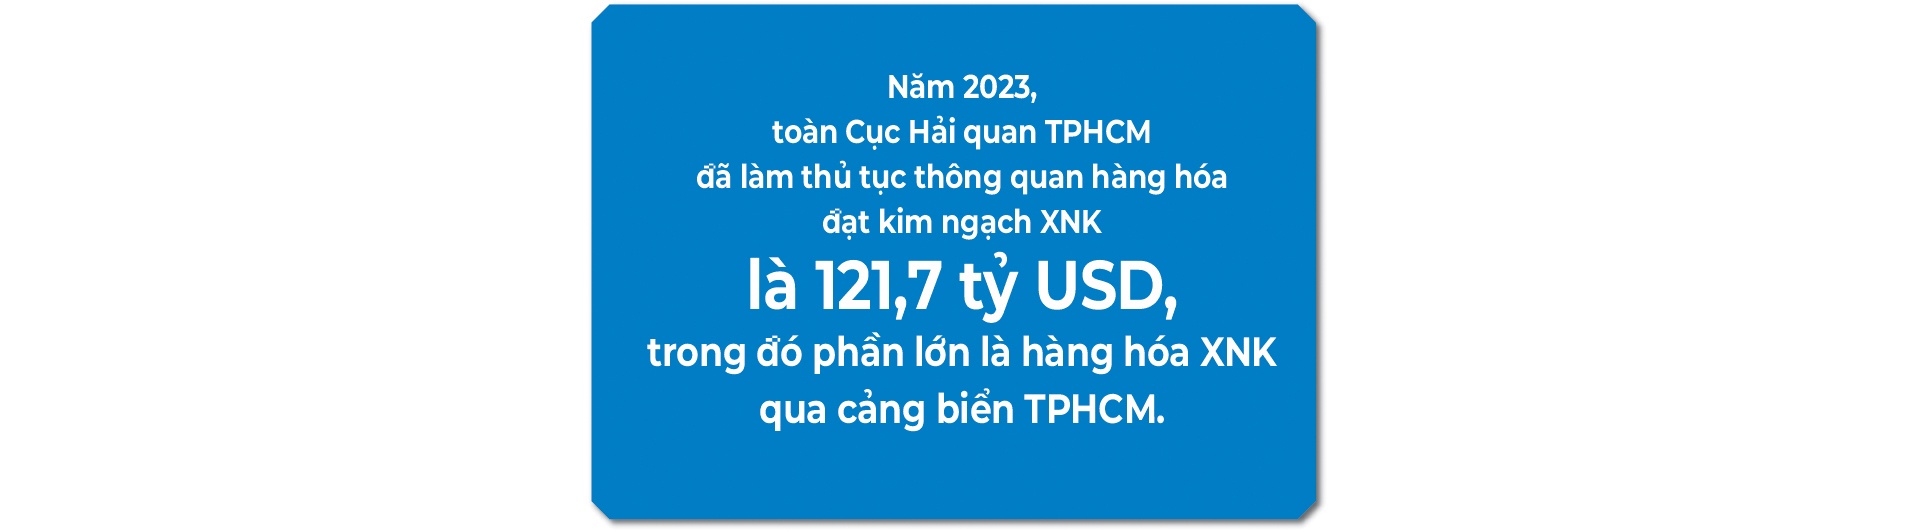 (LONGFORM) Cảng biển TPHCM – Vai trò quan trọng thúc đẩy phát triển kinh tế đất nước